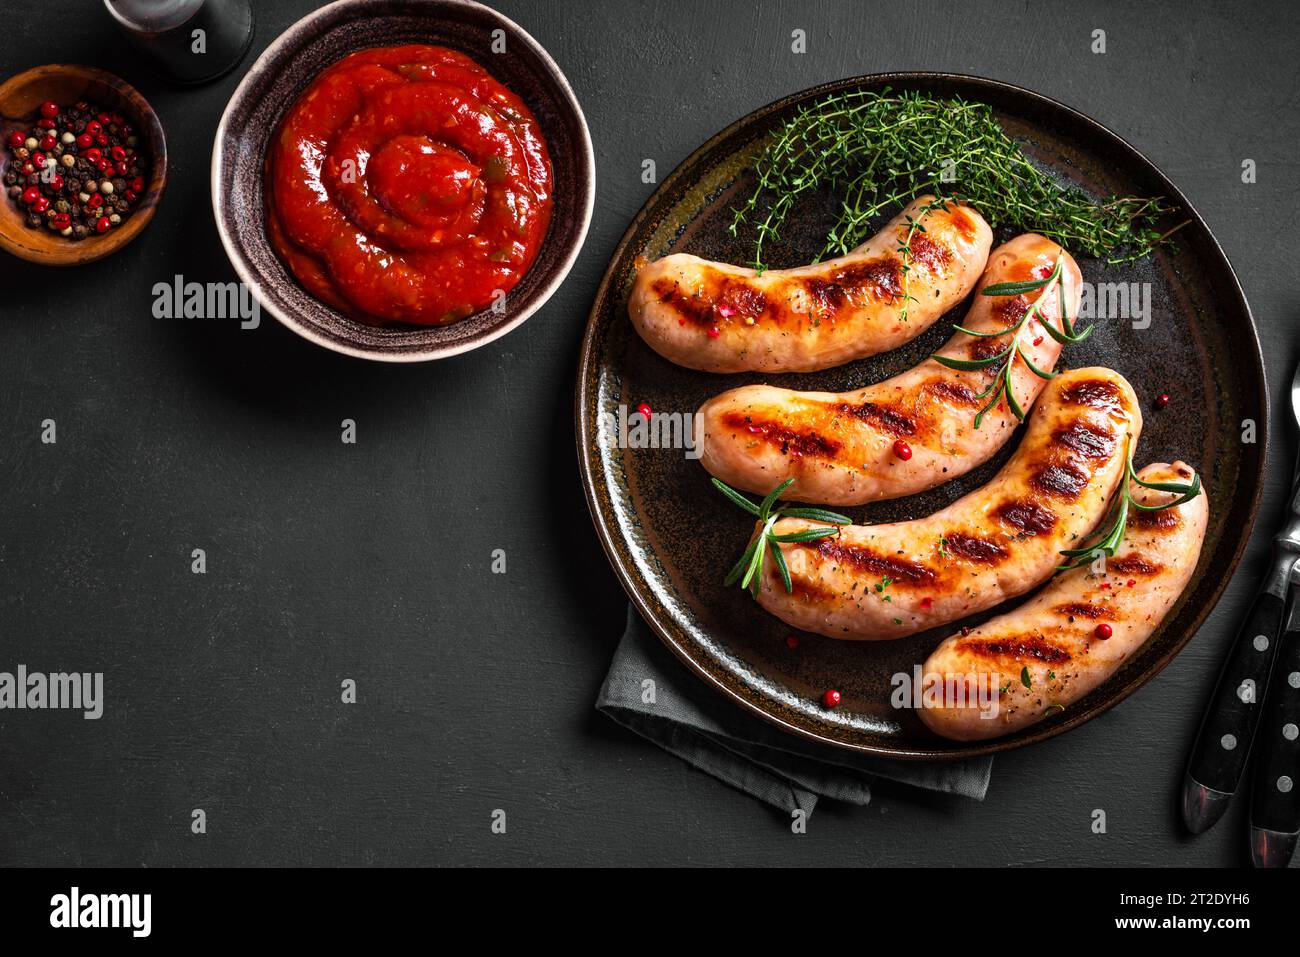 Saucisses grillées avec sauce tomate et herbes sur fond noir, vue de dessus, espace de copie. Saucisses wurst rôties maison sur assiette. Banque D'Images